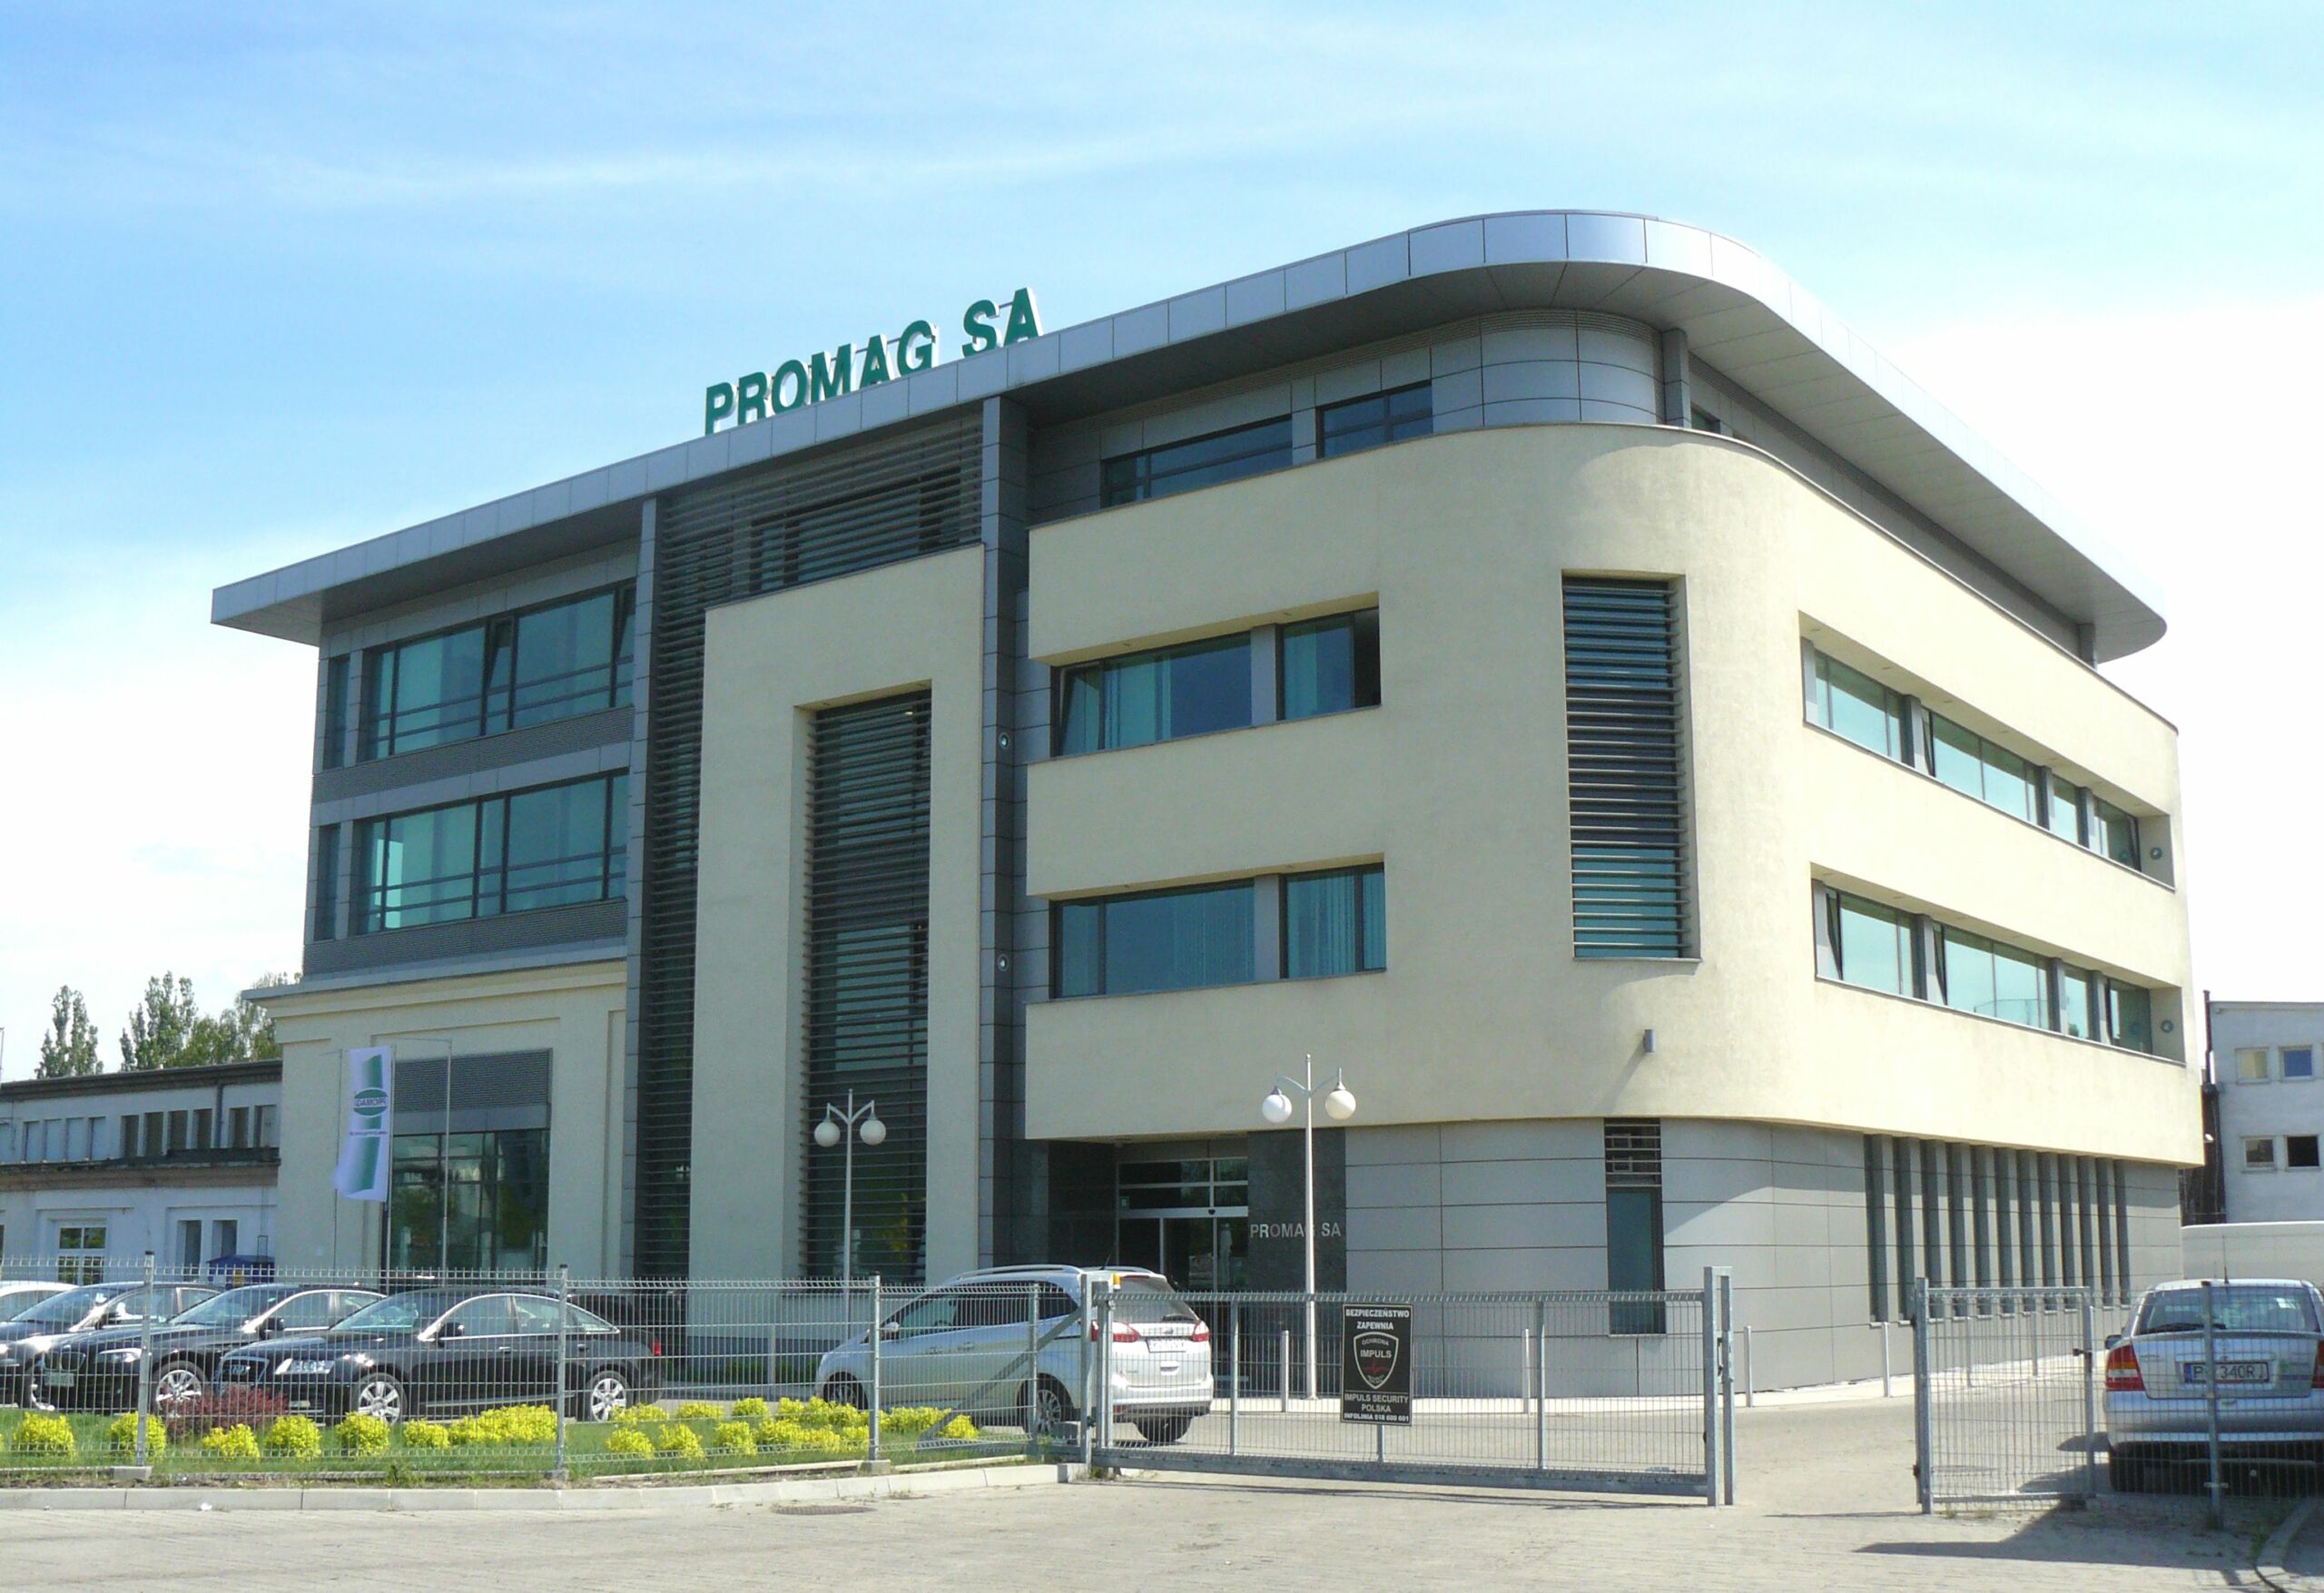 PROMAG headquarter in Poznan, Poland